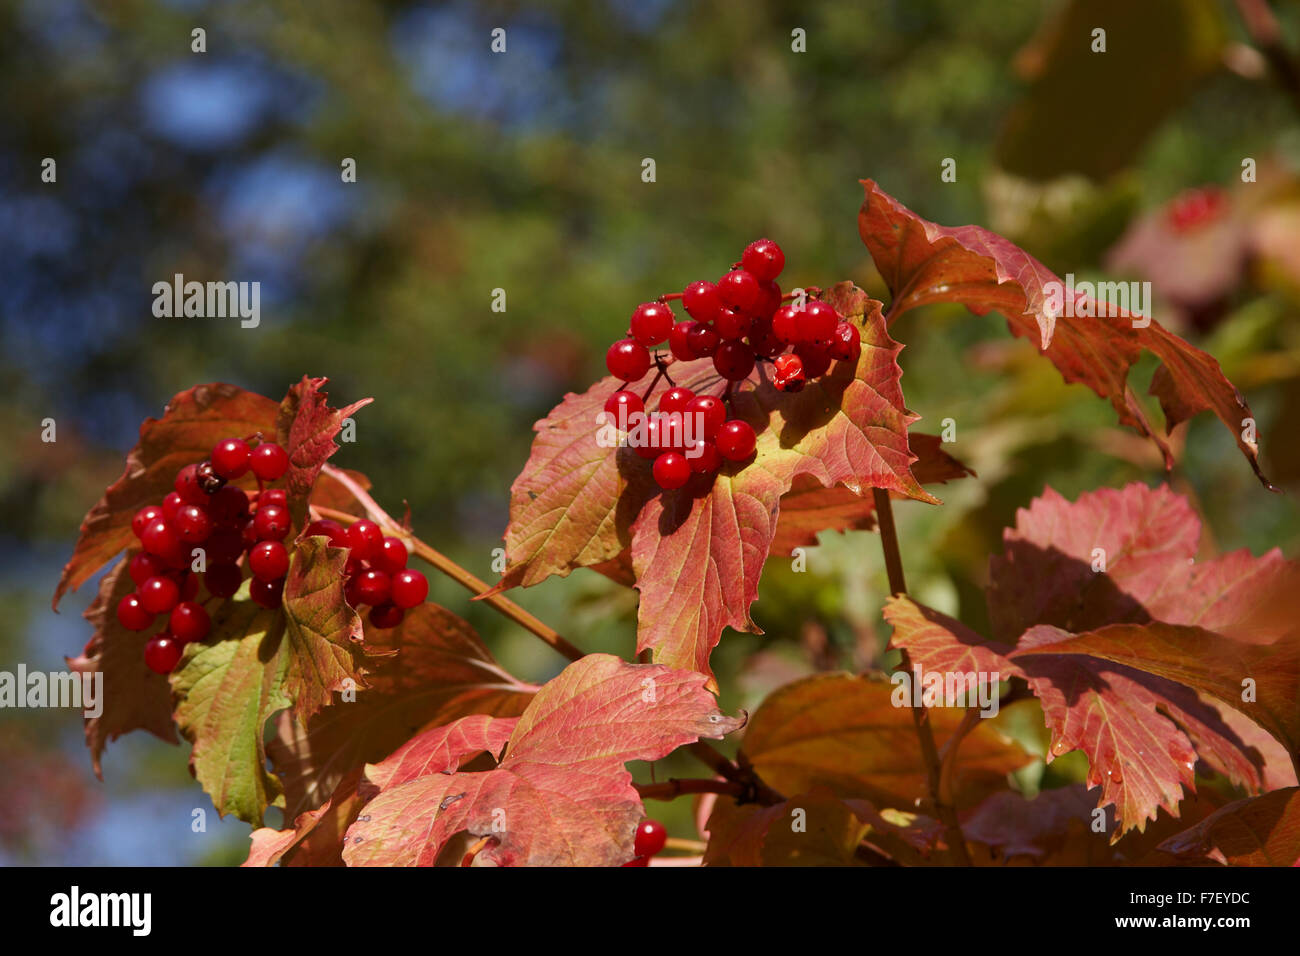 Guelder Rose,Viburnum opulus,fruits in autumn, Stock Photo